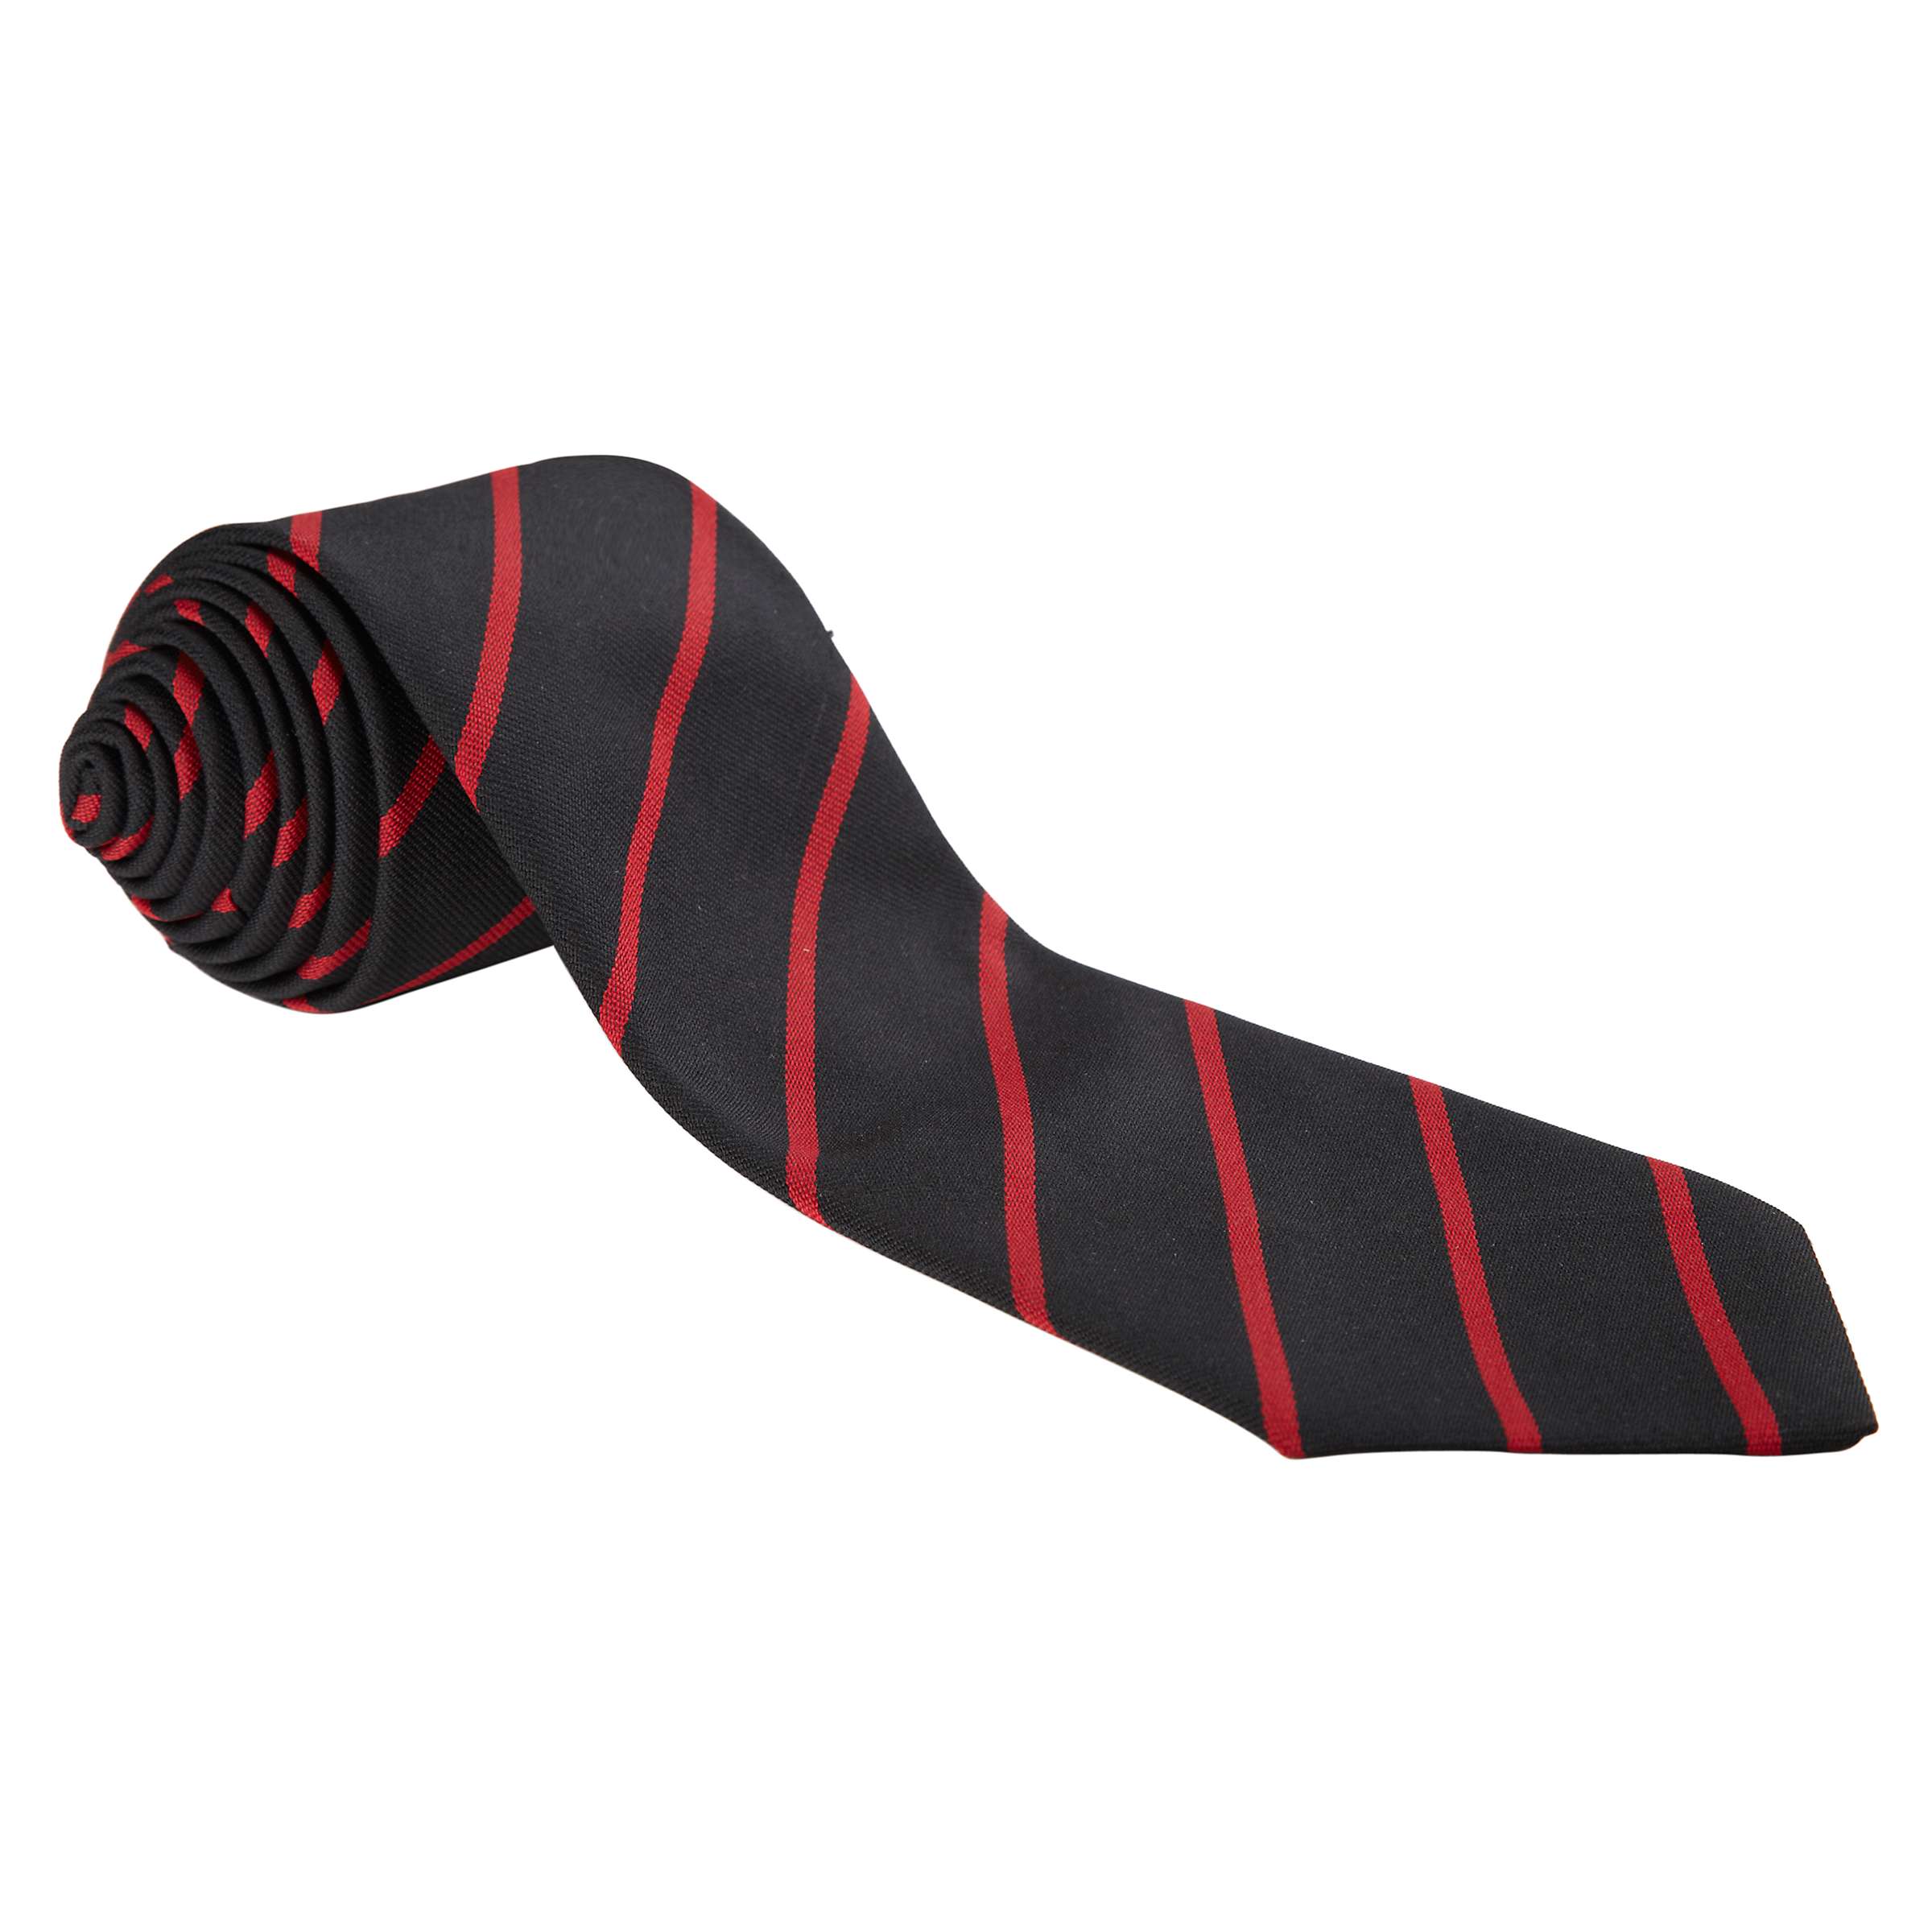 Buy City of London School (EC 4) Boys' Tie, Black/Red Online at johnlewis.com